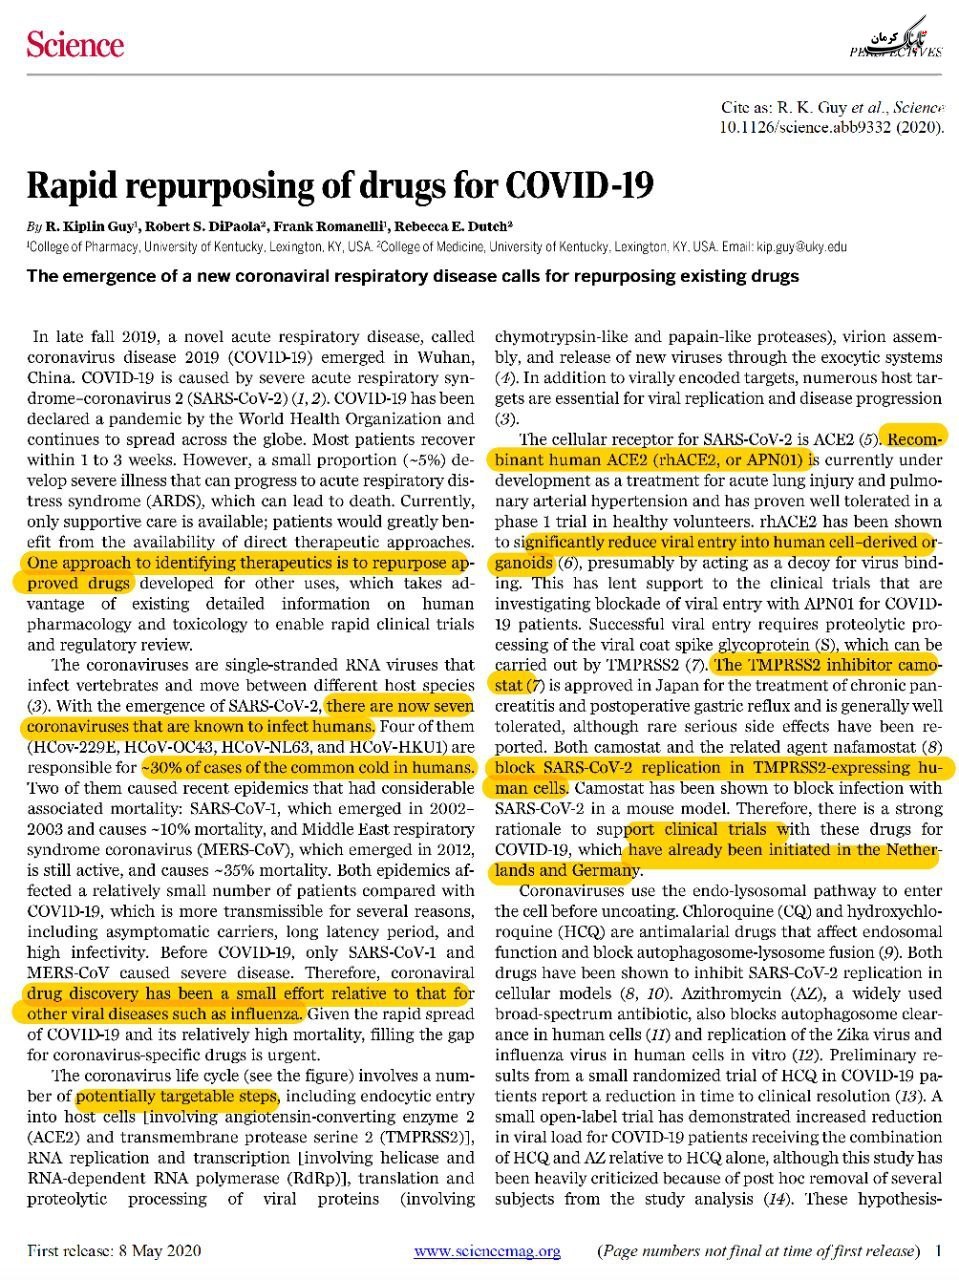 باز تعریف سریع کاربری برخی داروهای های موجود برای استفاده در درمان کووید ۱۹: مقاله ساینس